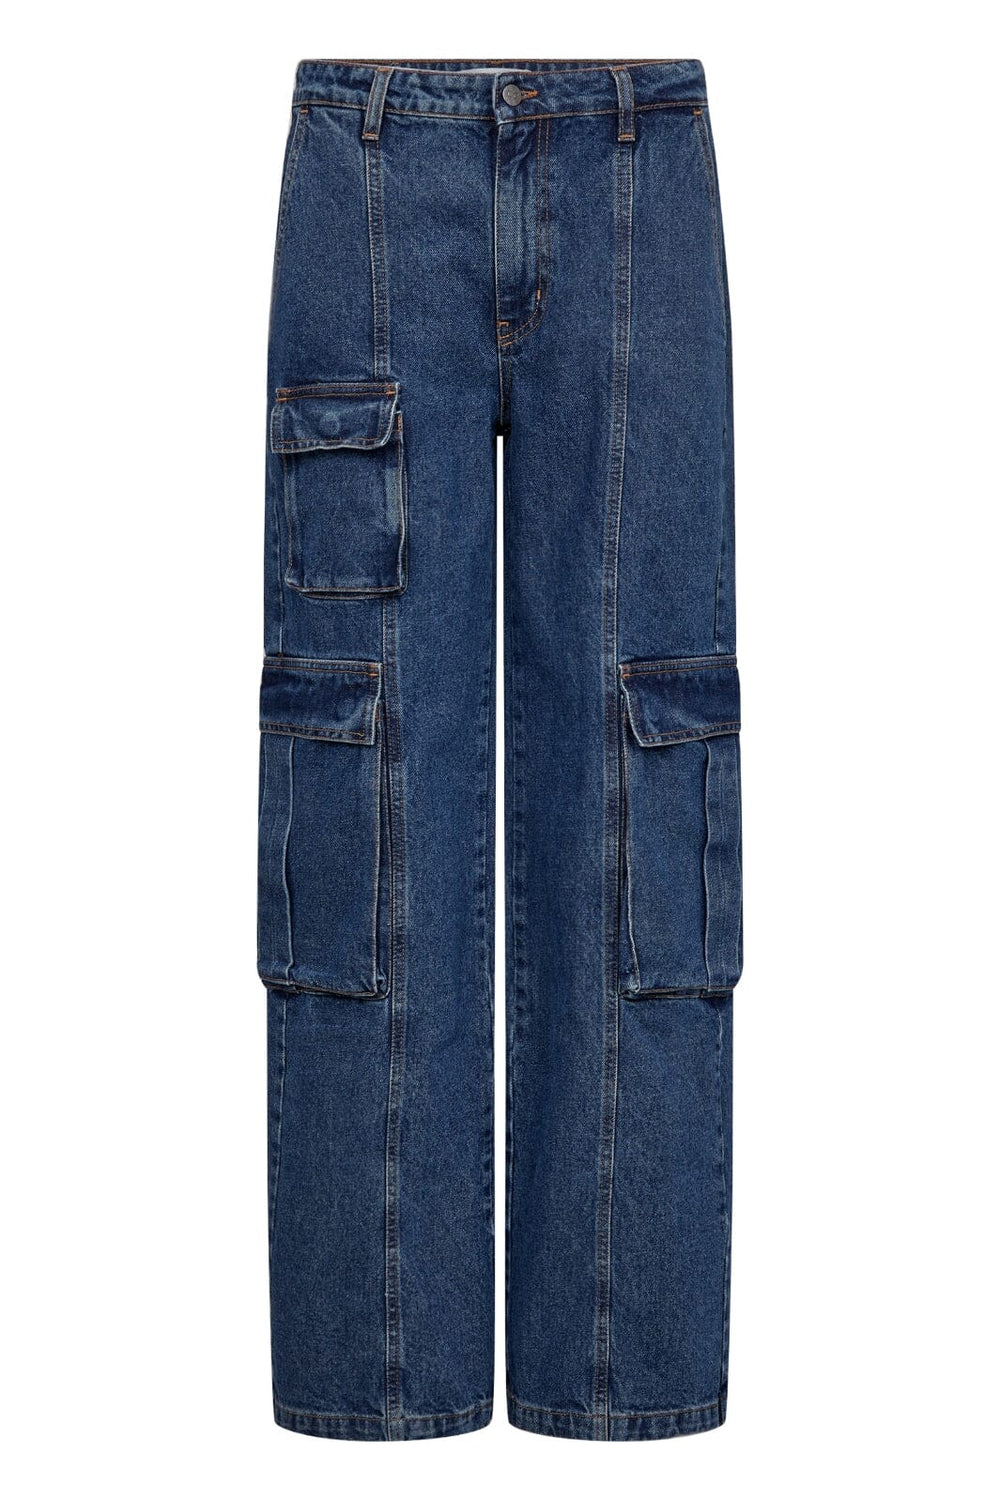 Forudbestilling - Co´couture - New Vikacc Pocket Jeans 31193 - 552 Denim Blue Jeans 